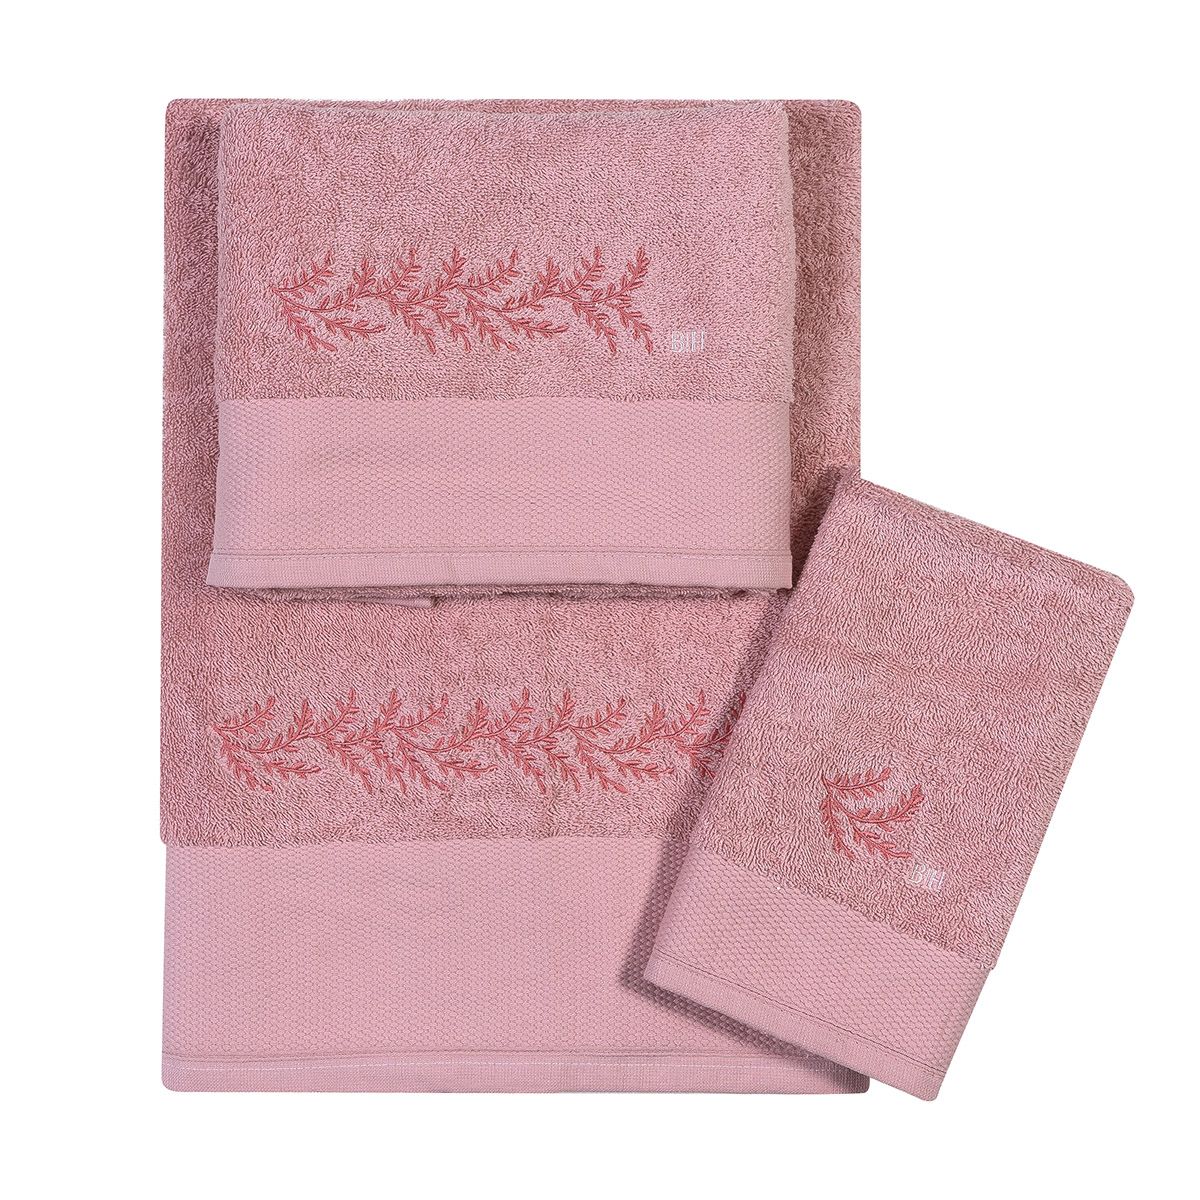 Πετσέτες με κέντημα σετ 3τμχ Art 3373 pink beauty home